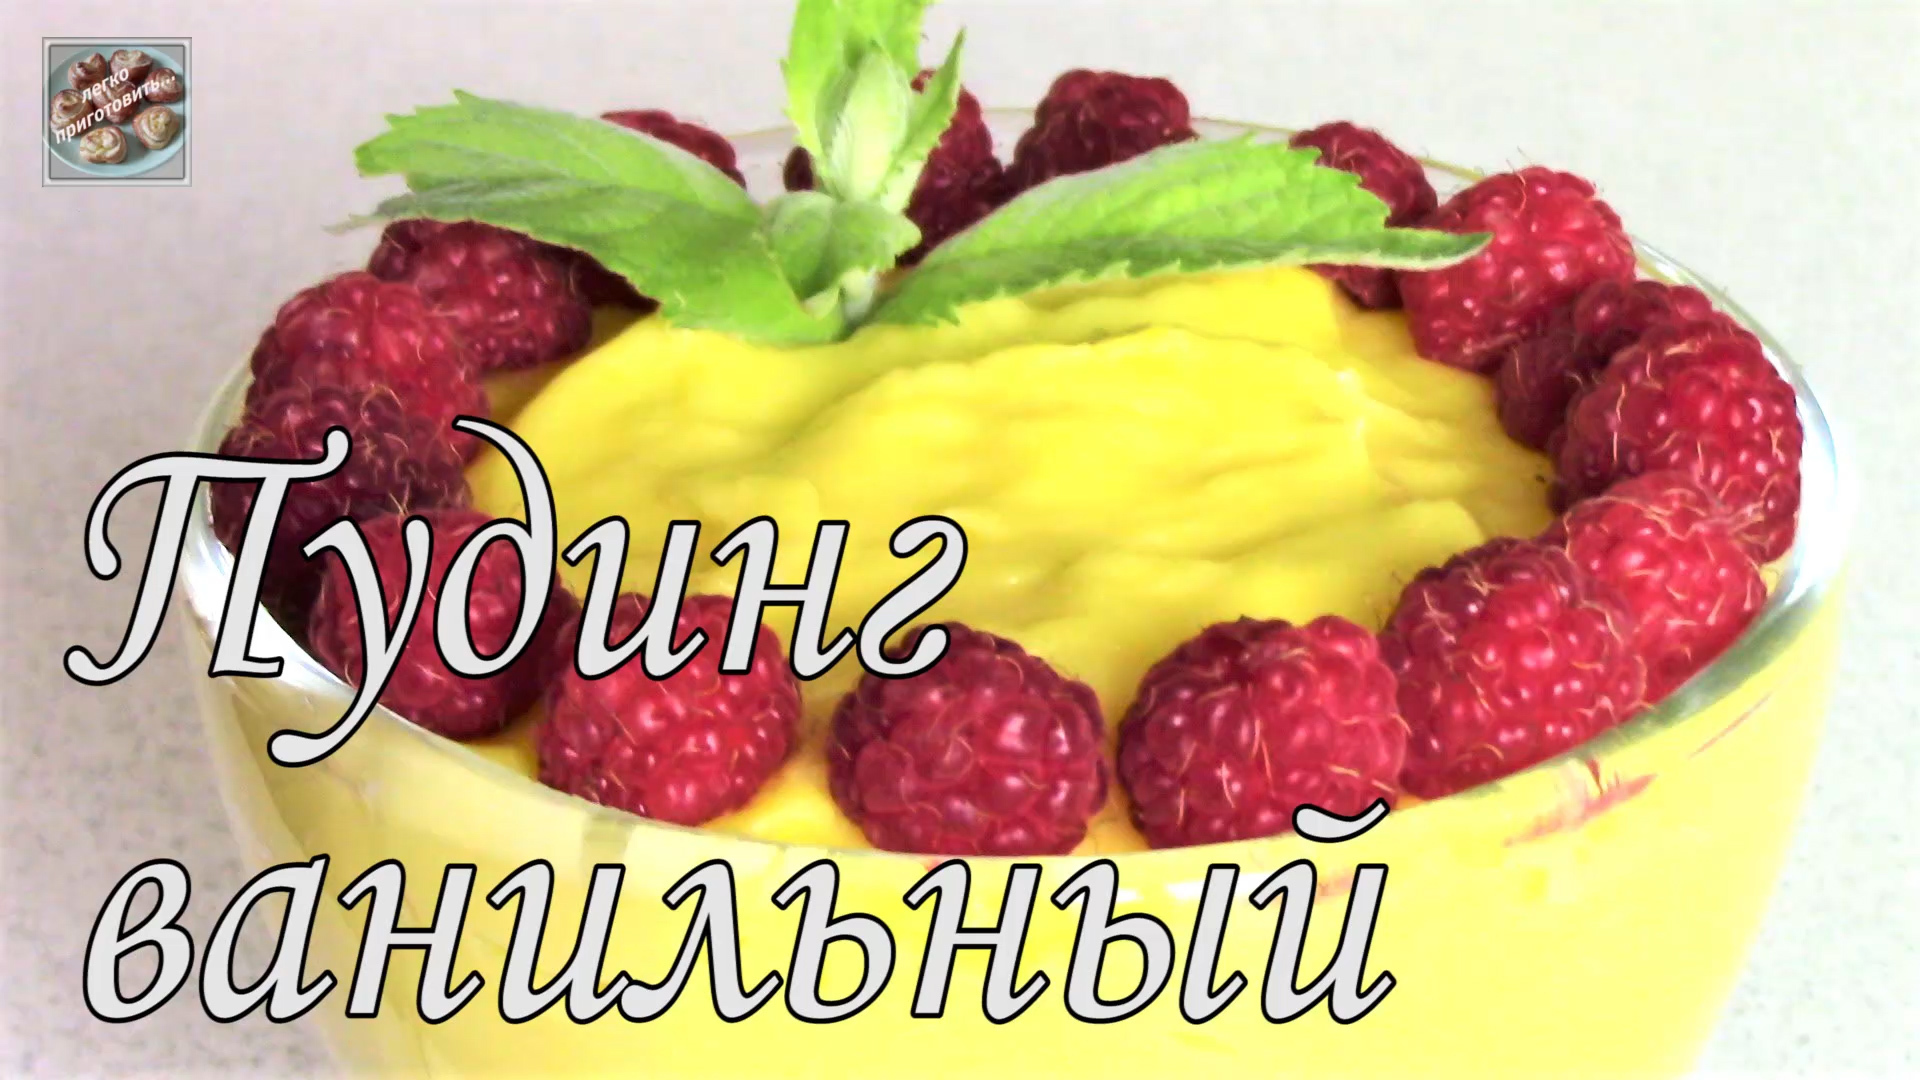 Ванильный пудинг с ягодами – пошаговый рецепт, фотографии, калорийность, способ приготовления